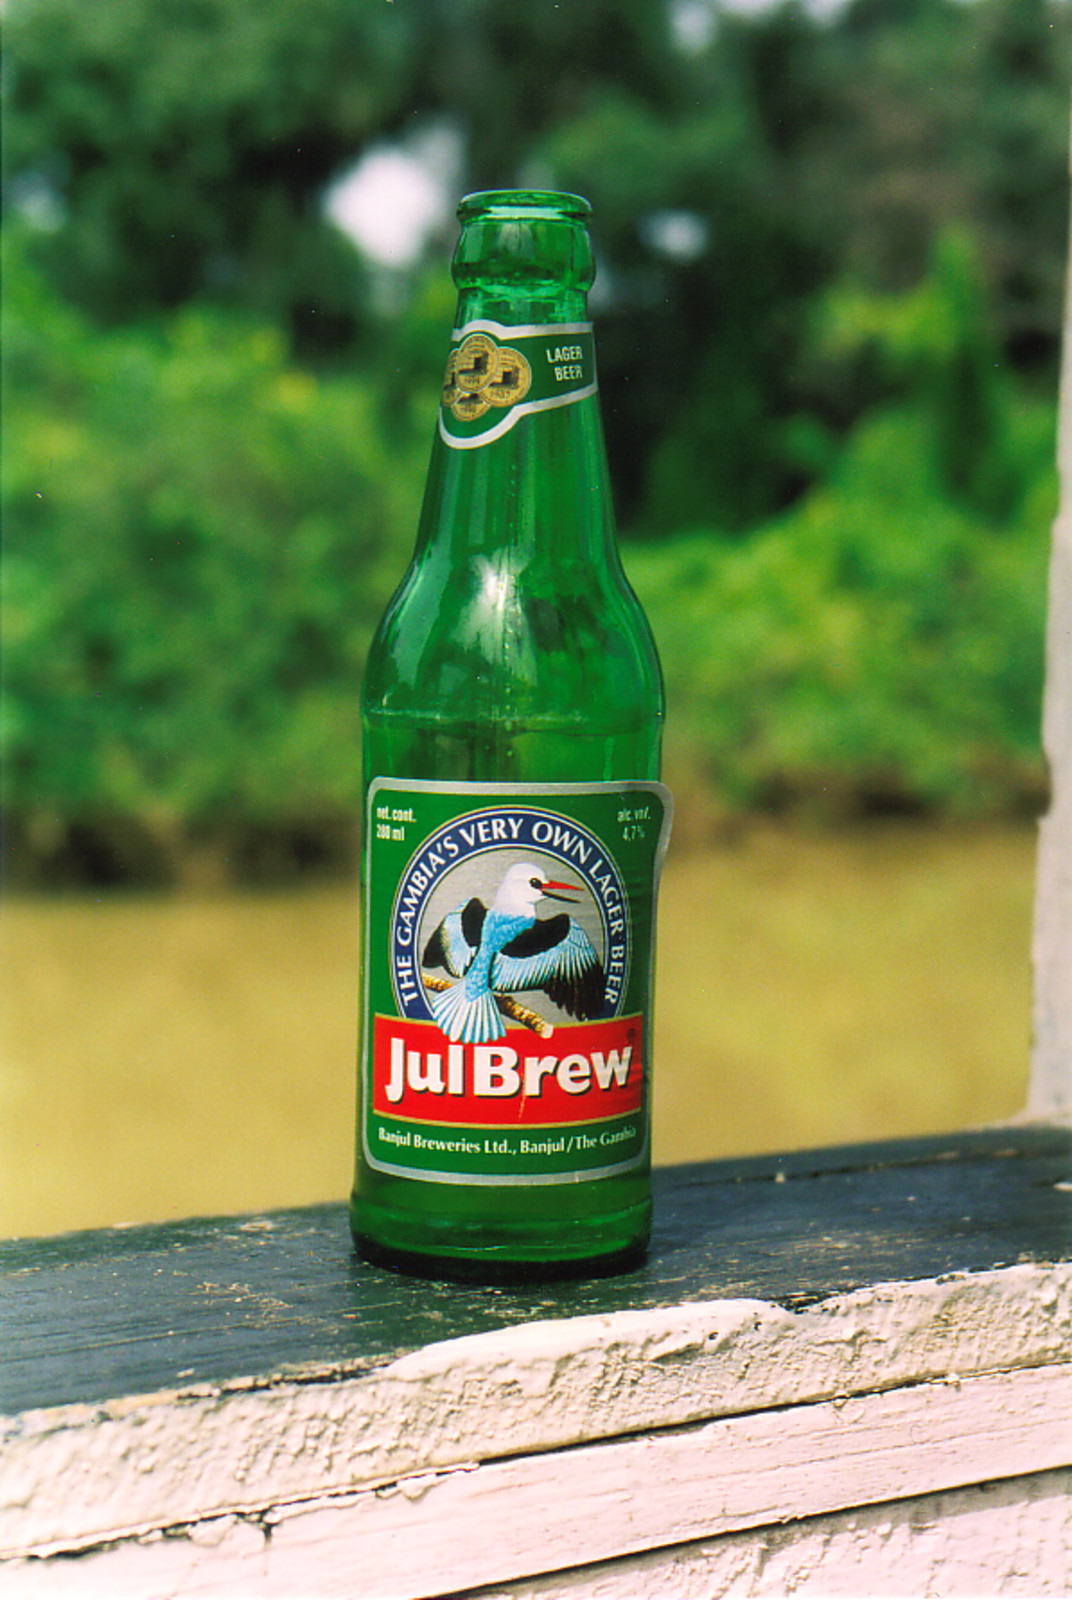 A bottle of Julbrew beer